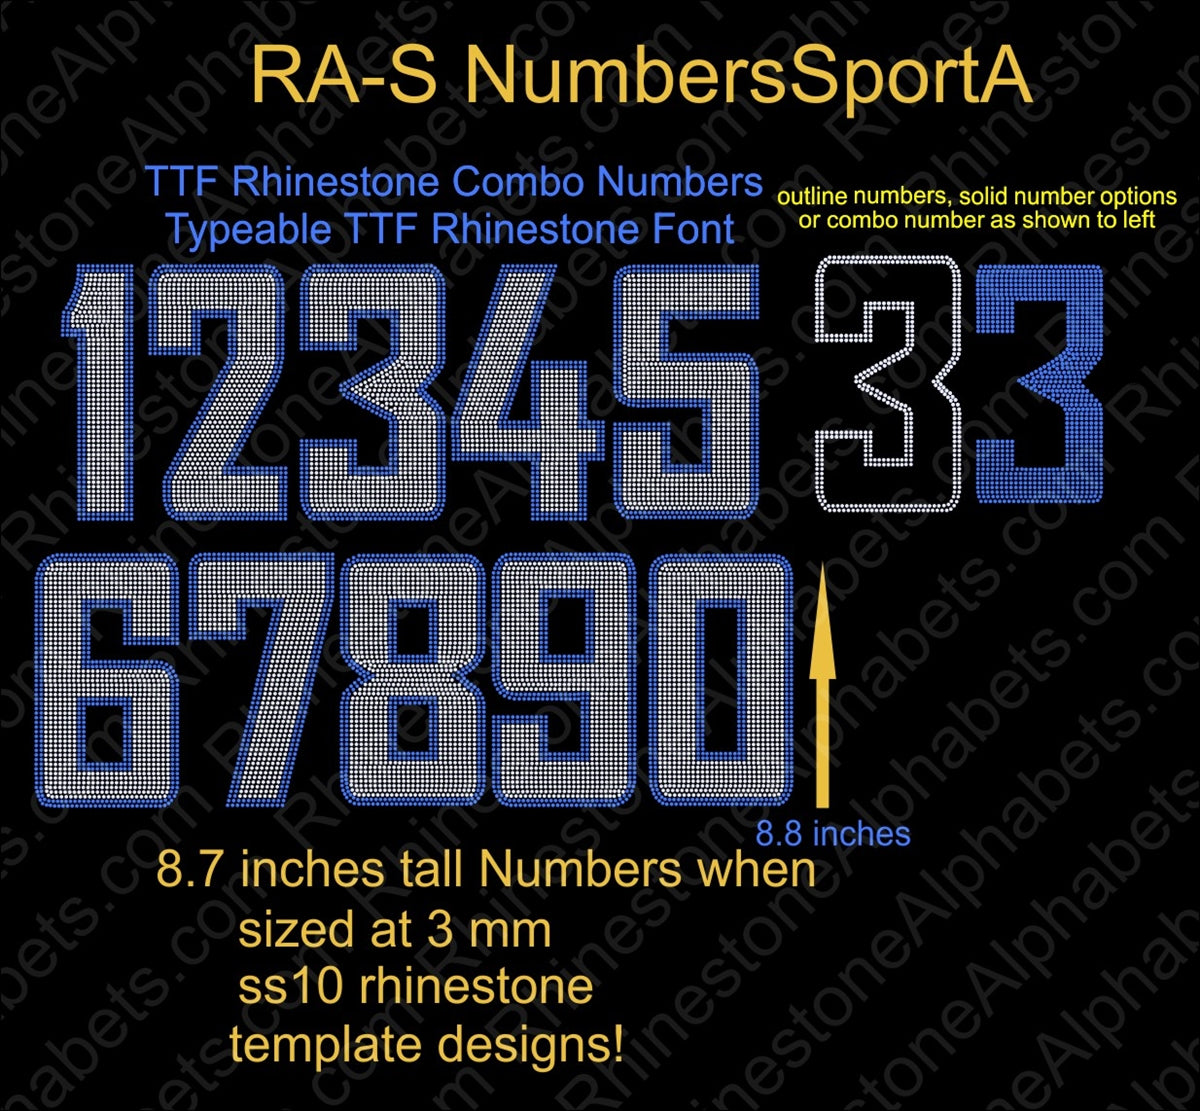 RA-S NumbersSport8A ,TTF Rhinestone Fonts & Rhinestone Designs